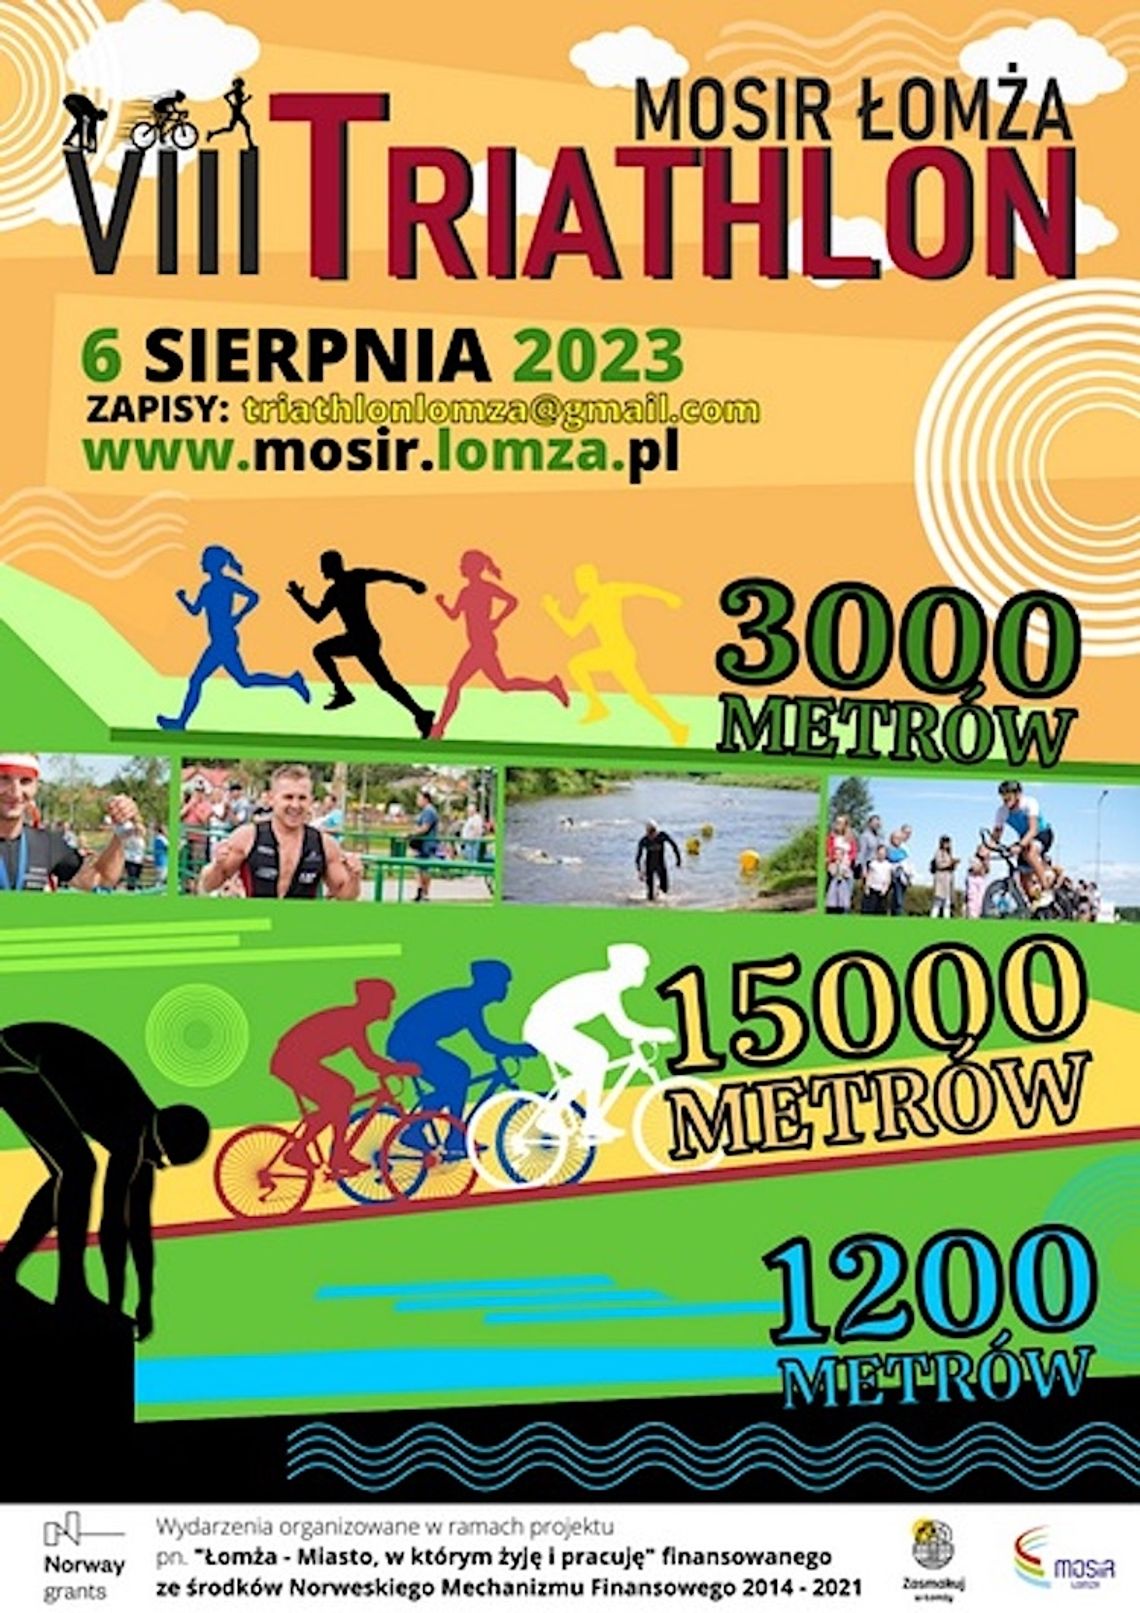 VIII Triathlon MOSiR Łomża już w niedzielę 6 sierpnia